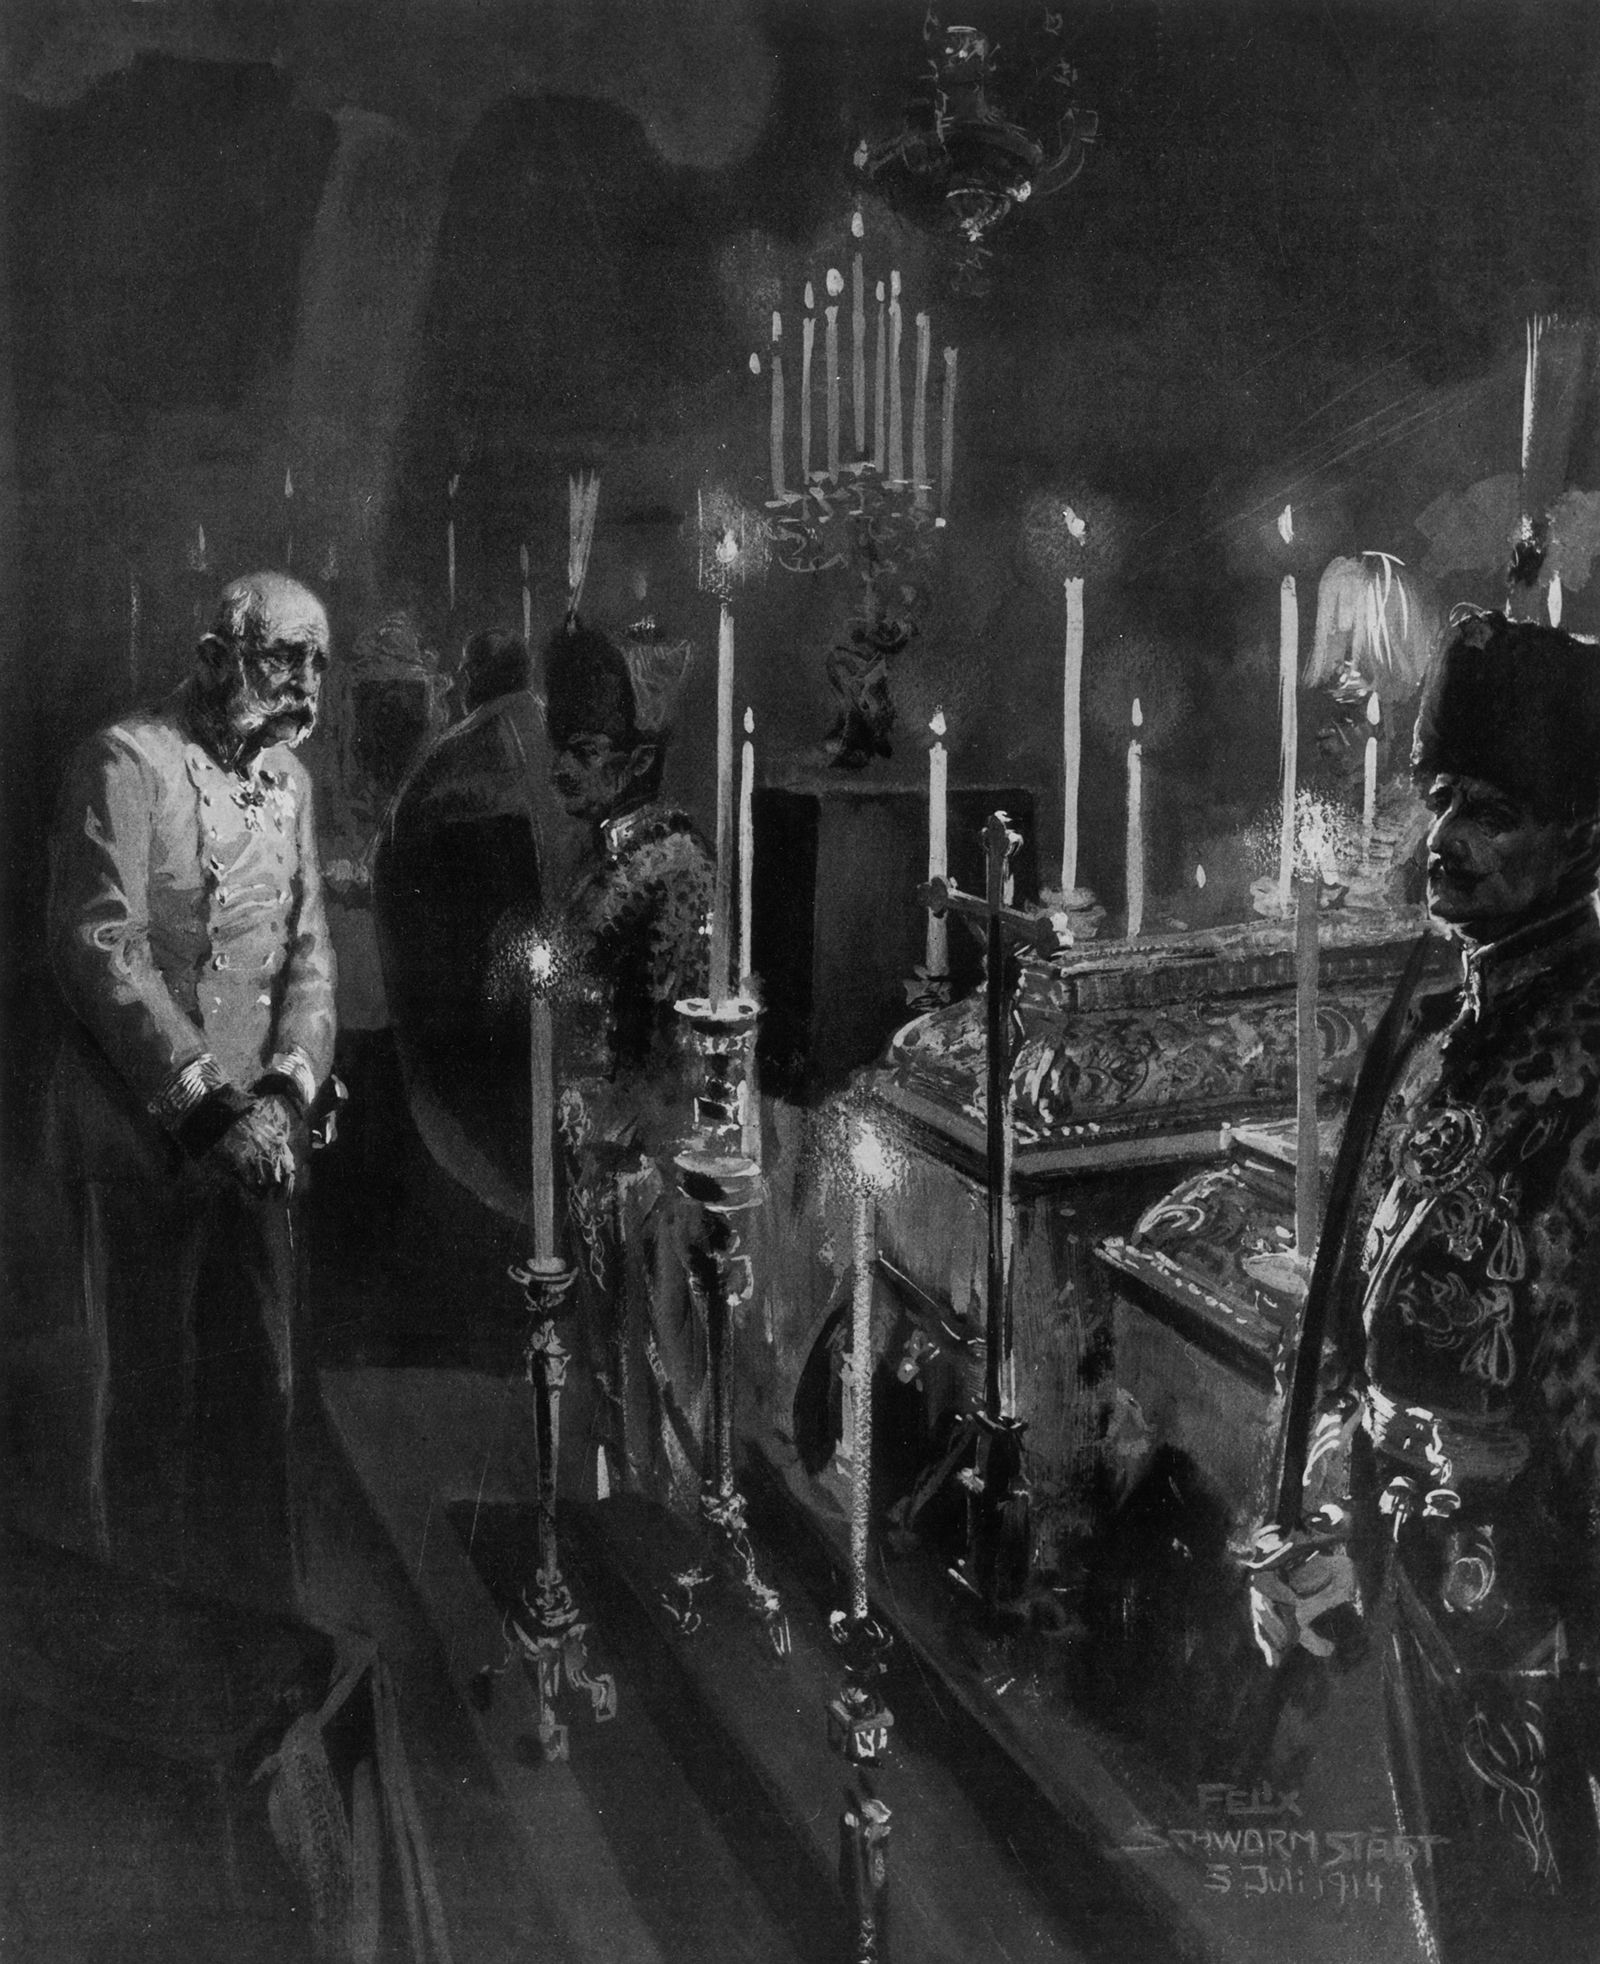 François-Joseph devant les cercueils de François-Ferdinand et de la duchesse Sophie de Hohenberg